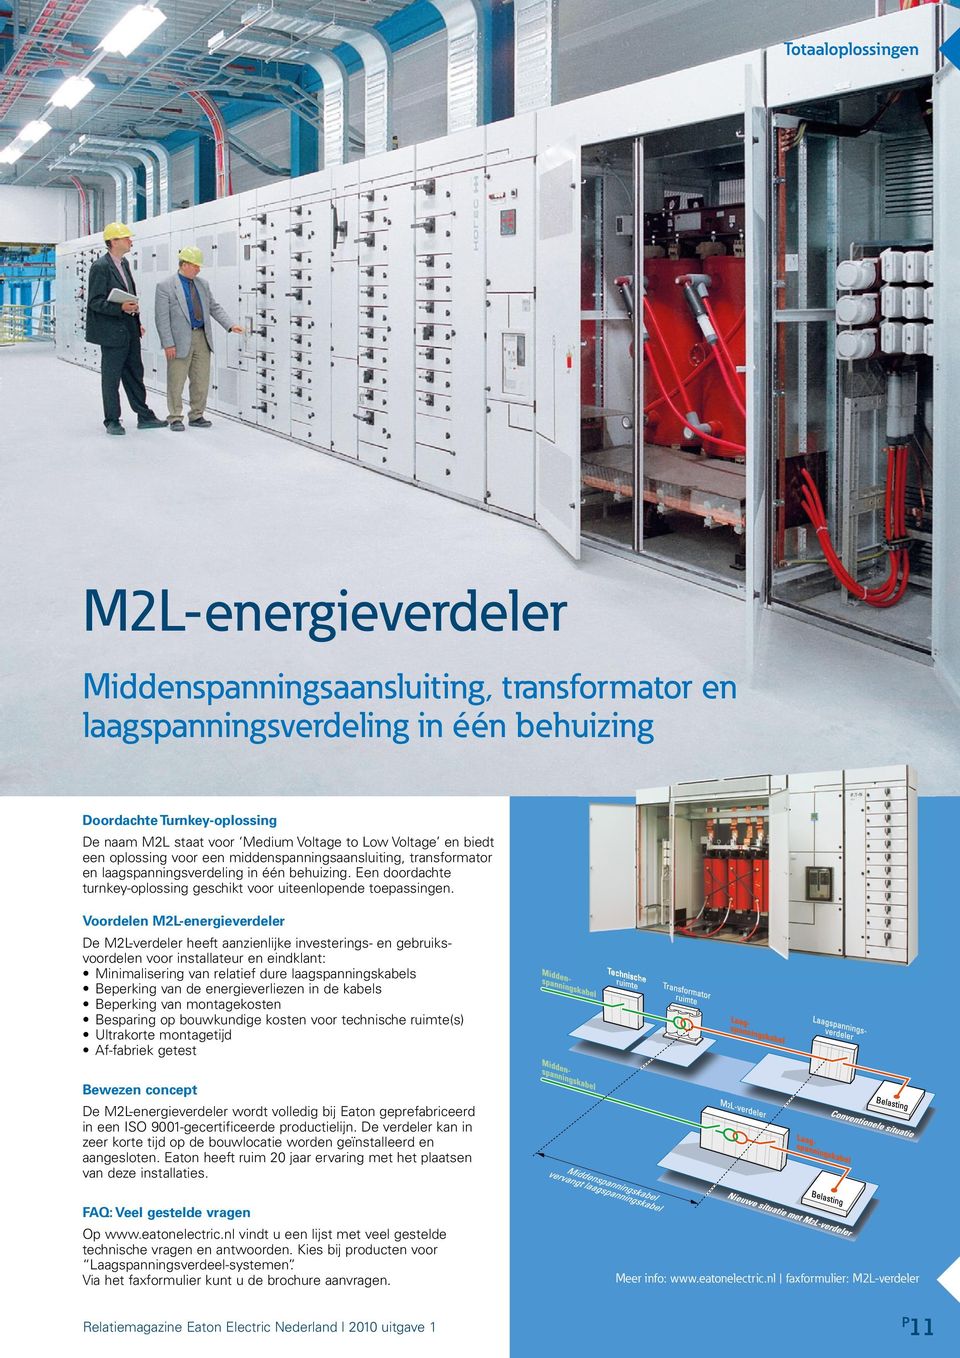 Voordelen M2L-energieverdeler De M2L-verdeler heeft aanzienlijke investerings- en gebruiksvoordelen voor installateur en eindklant: Minimalisering van relatief dure laagspanningskabels Beperking van